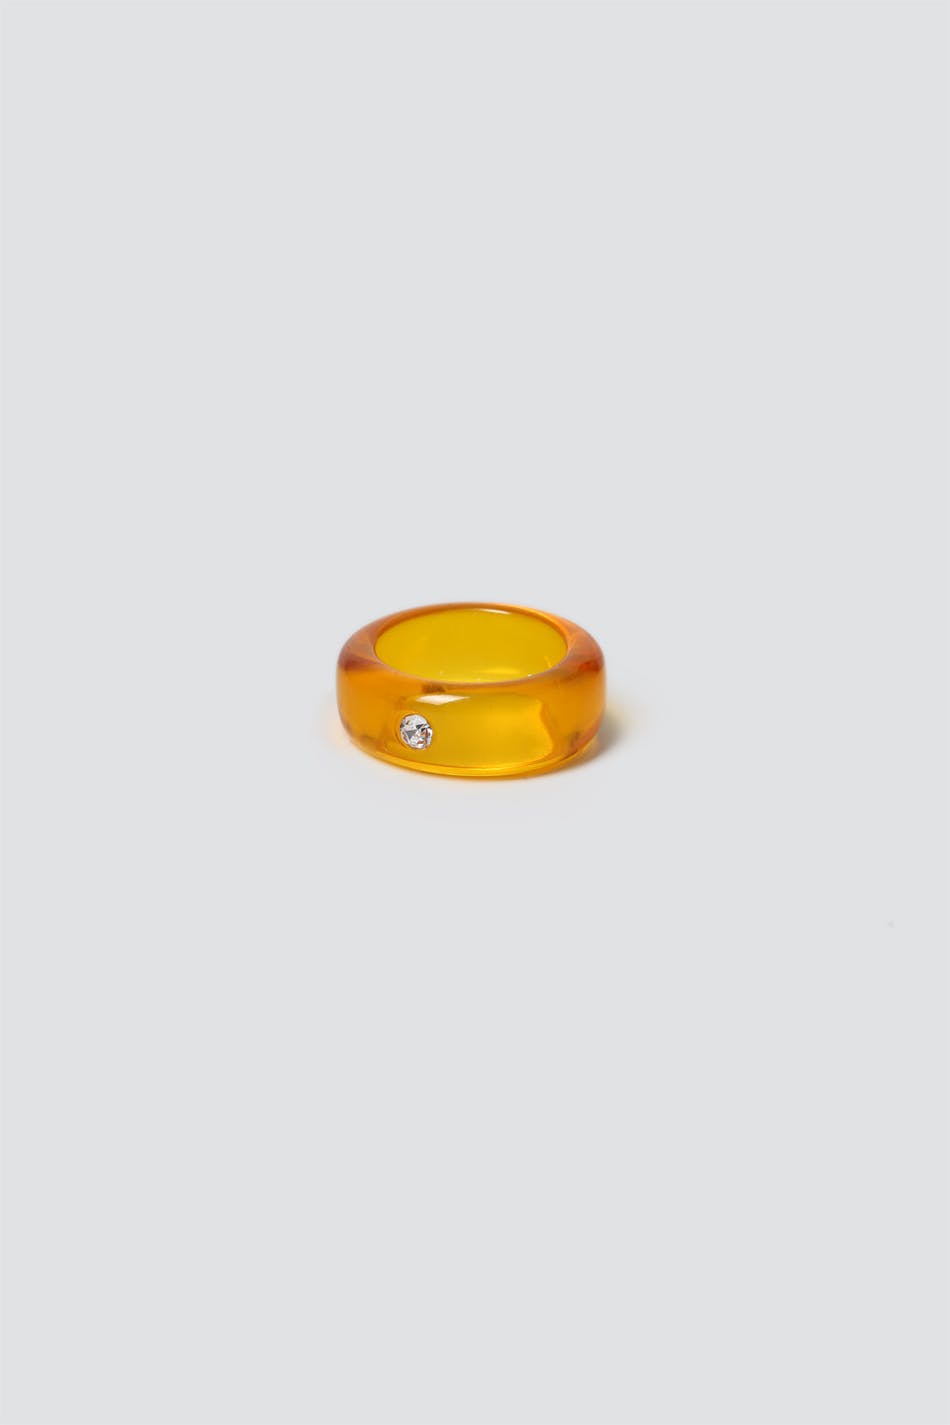 Amber Resin Ring